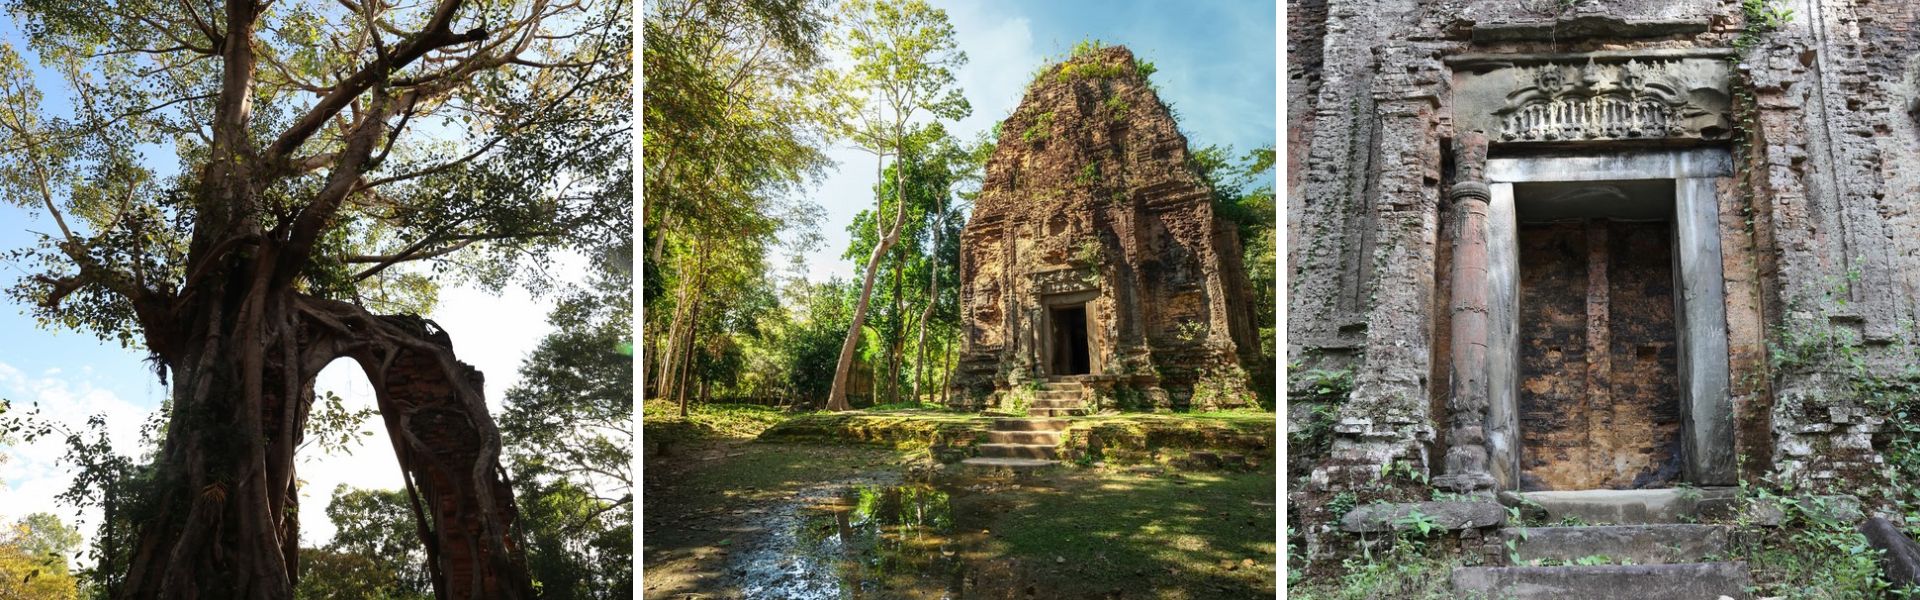 Kampong Thom: Sehenswürdigkeiten und Aktivitäten  | Kambodscha Reisen